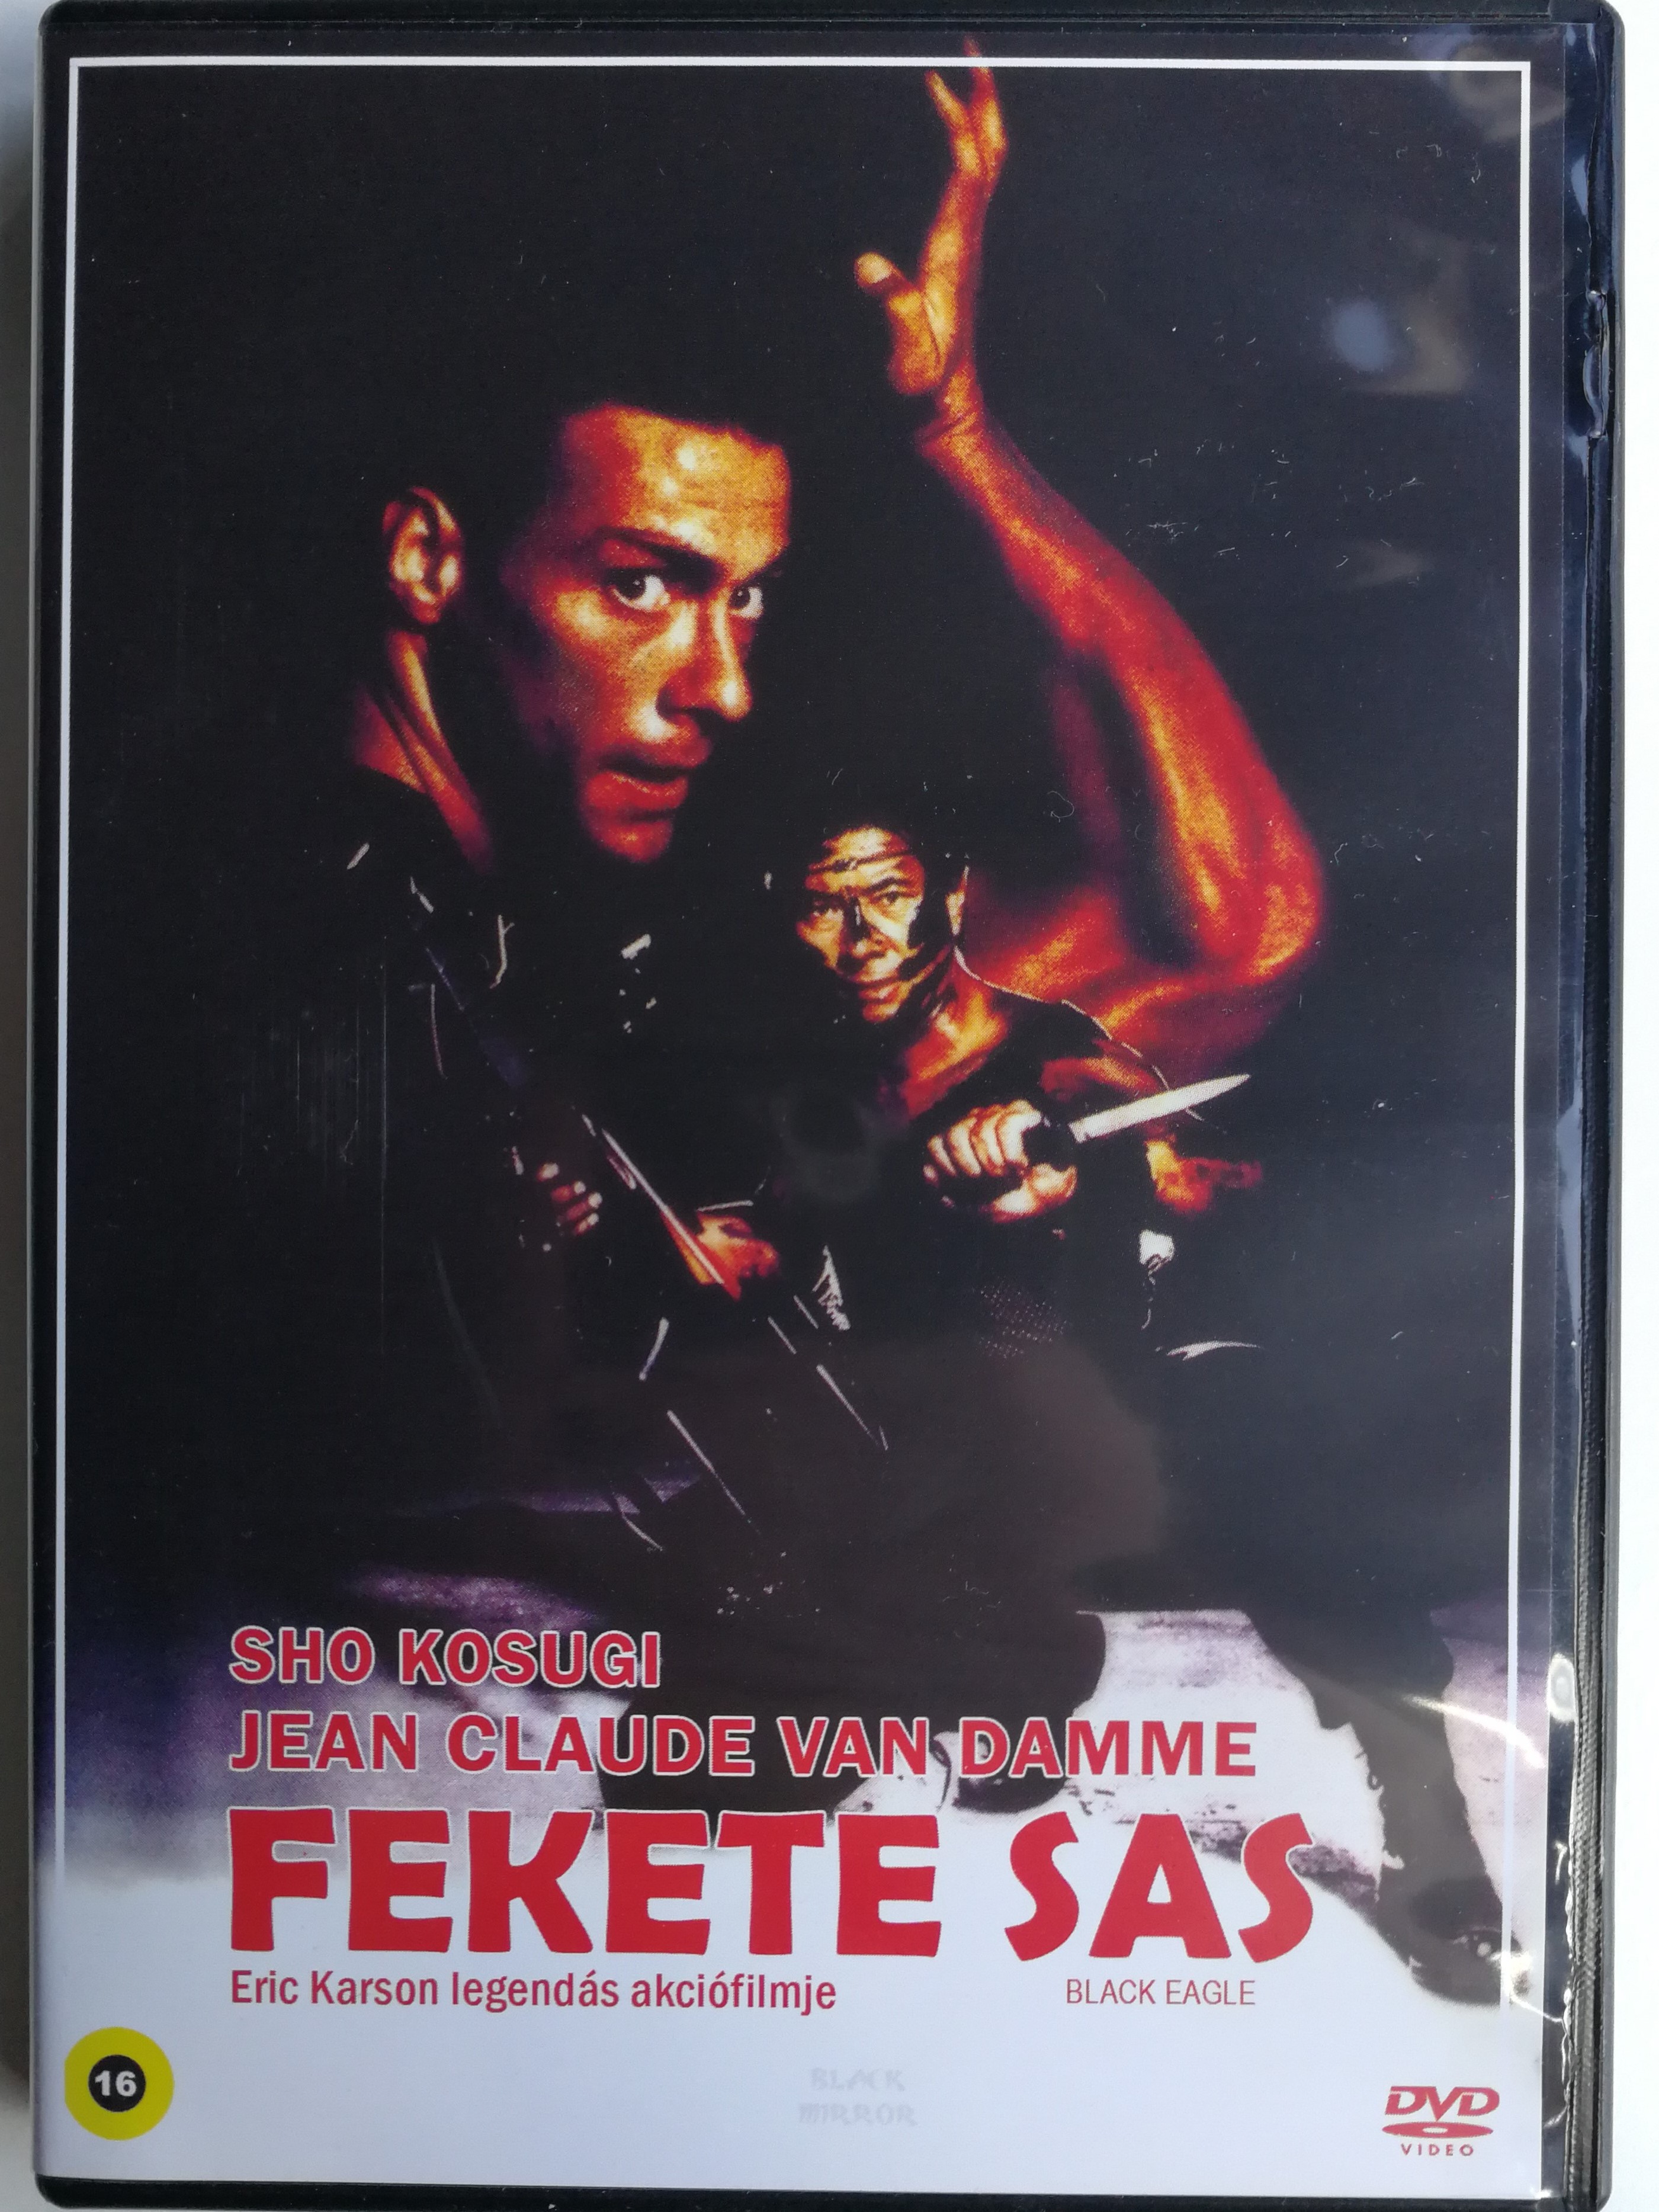 Black Eagle DVD 1988 Fekete Sas / Directed by Eric Karson / Starring: Shō  Kosugi, Jean-Claude van Damme, Doran Clark - Bible in My Language